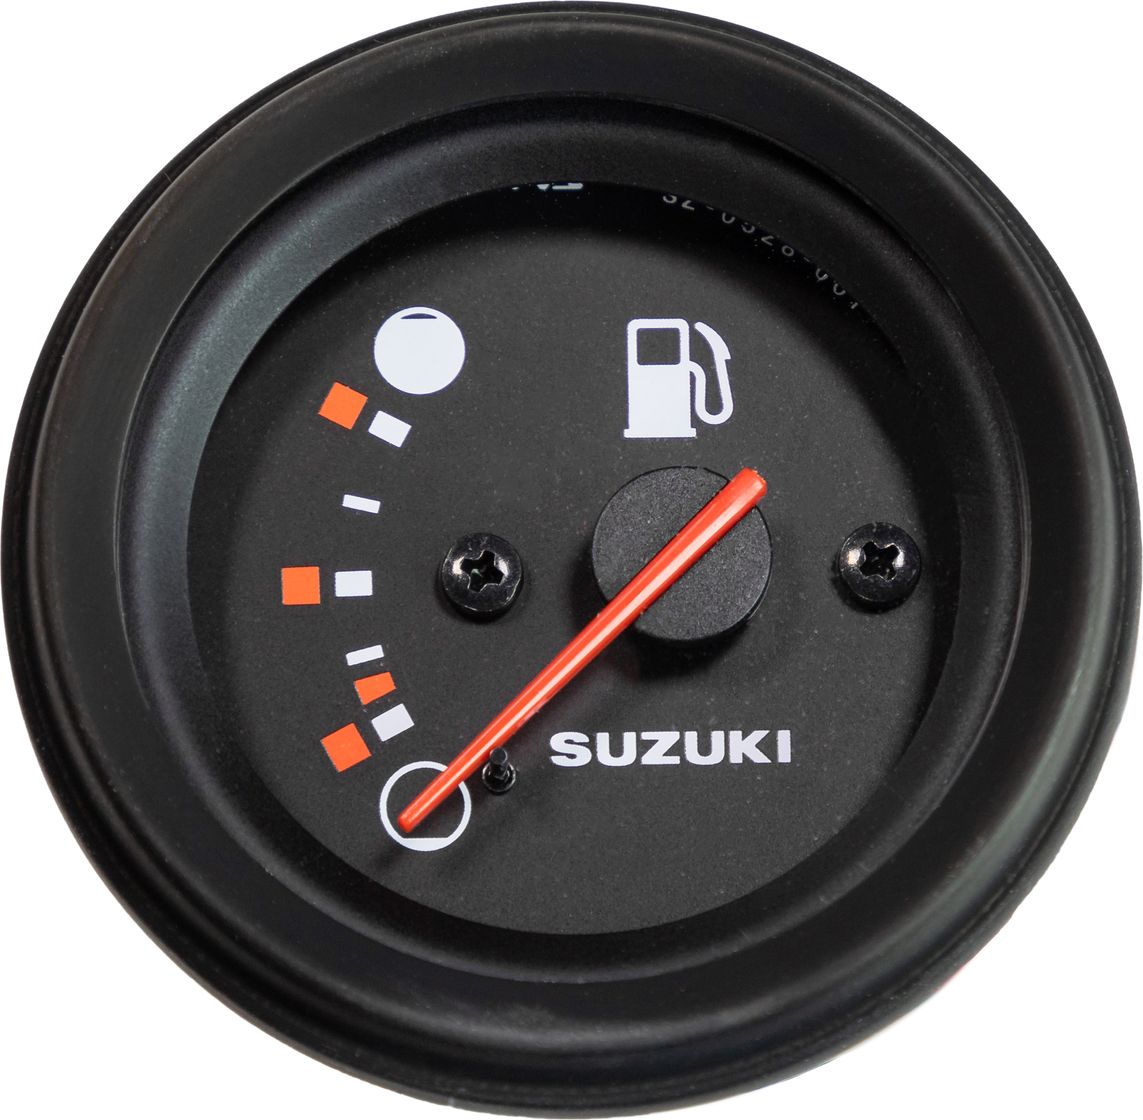 указатель уровня топлива suzuki df25 250 dt25 40 3430093j02000 Указатель уровня топлива Suzuki DF25-250/DT25-40, черный 3430093J02000